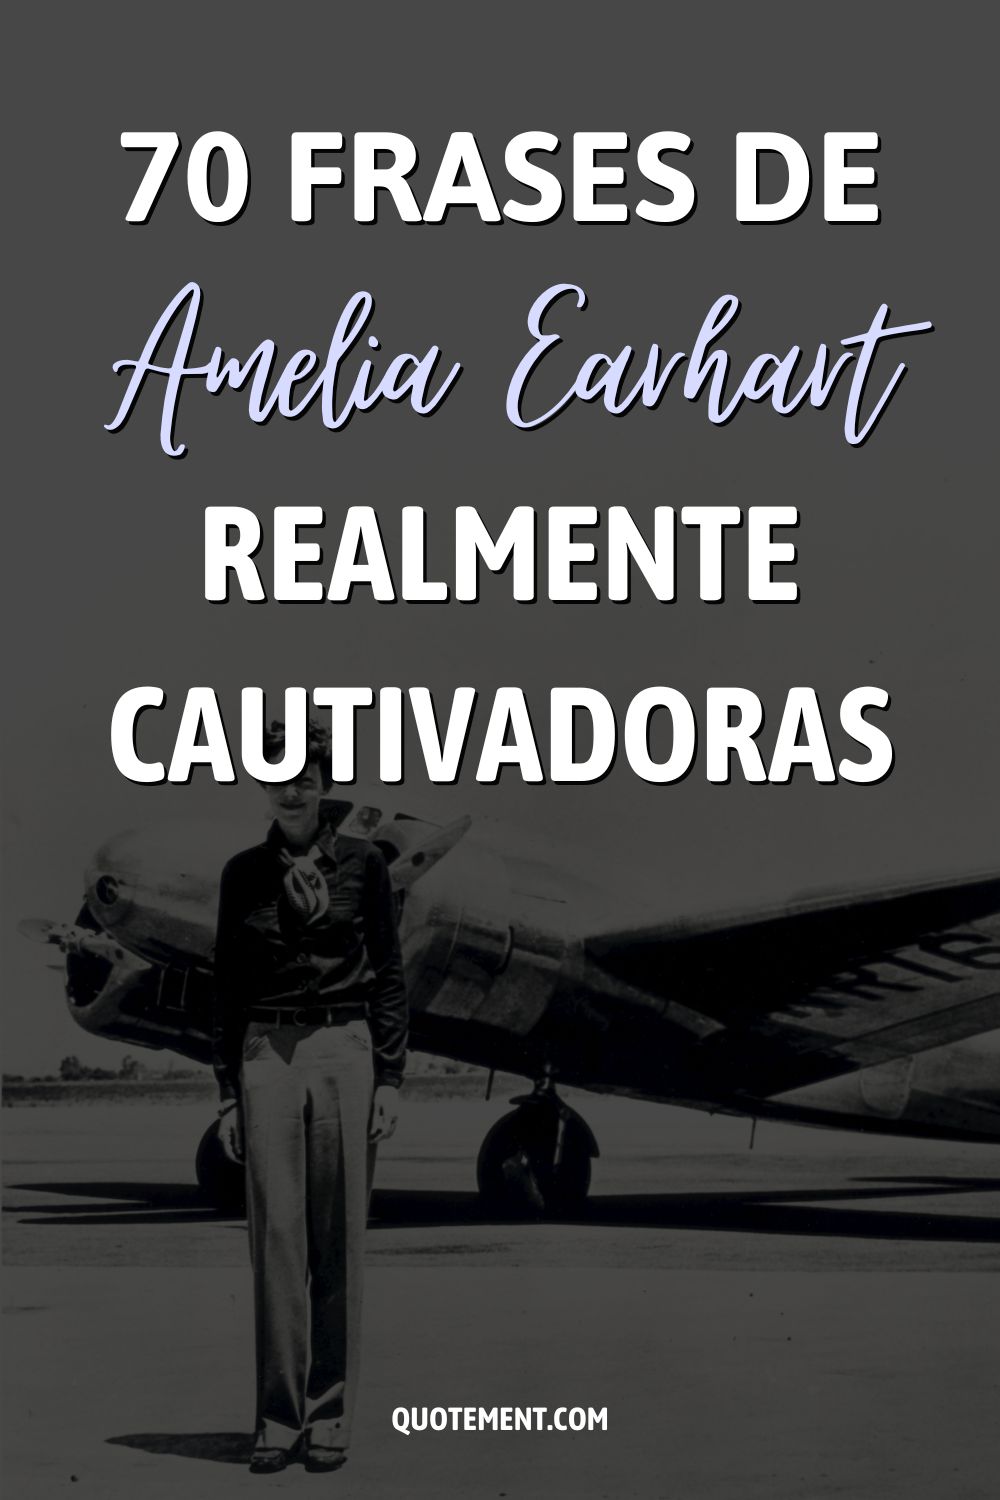 70 frases de Amelia Earhart realmente cautivadoras 